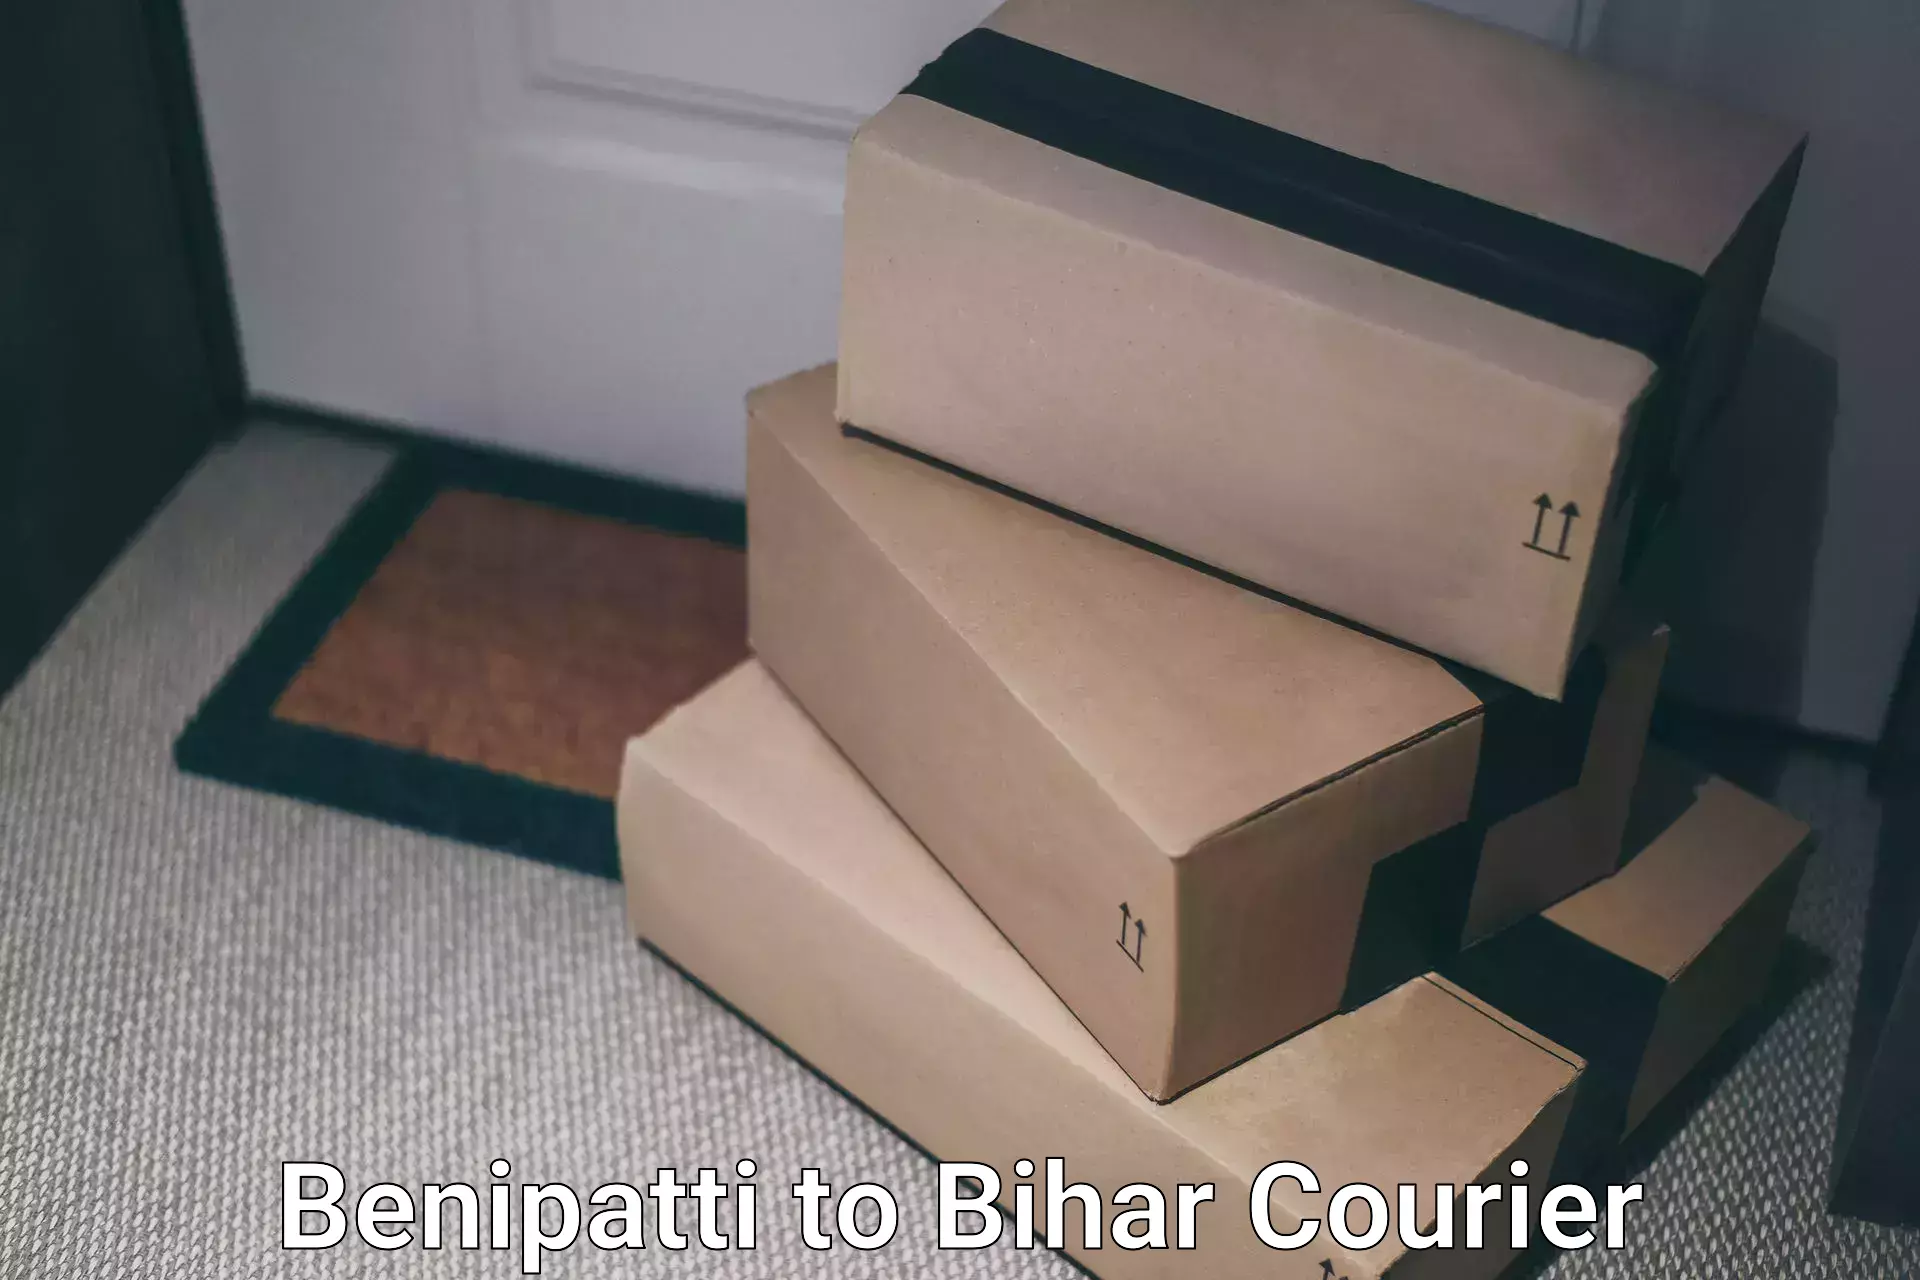 Logistics service provider Benipatti to Kishunganj